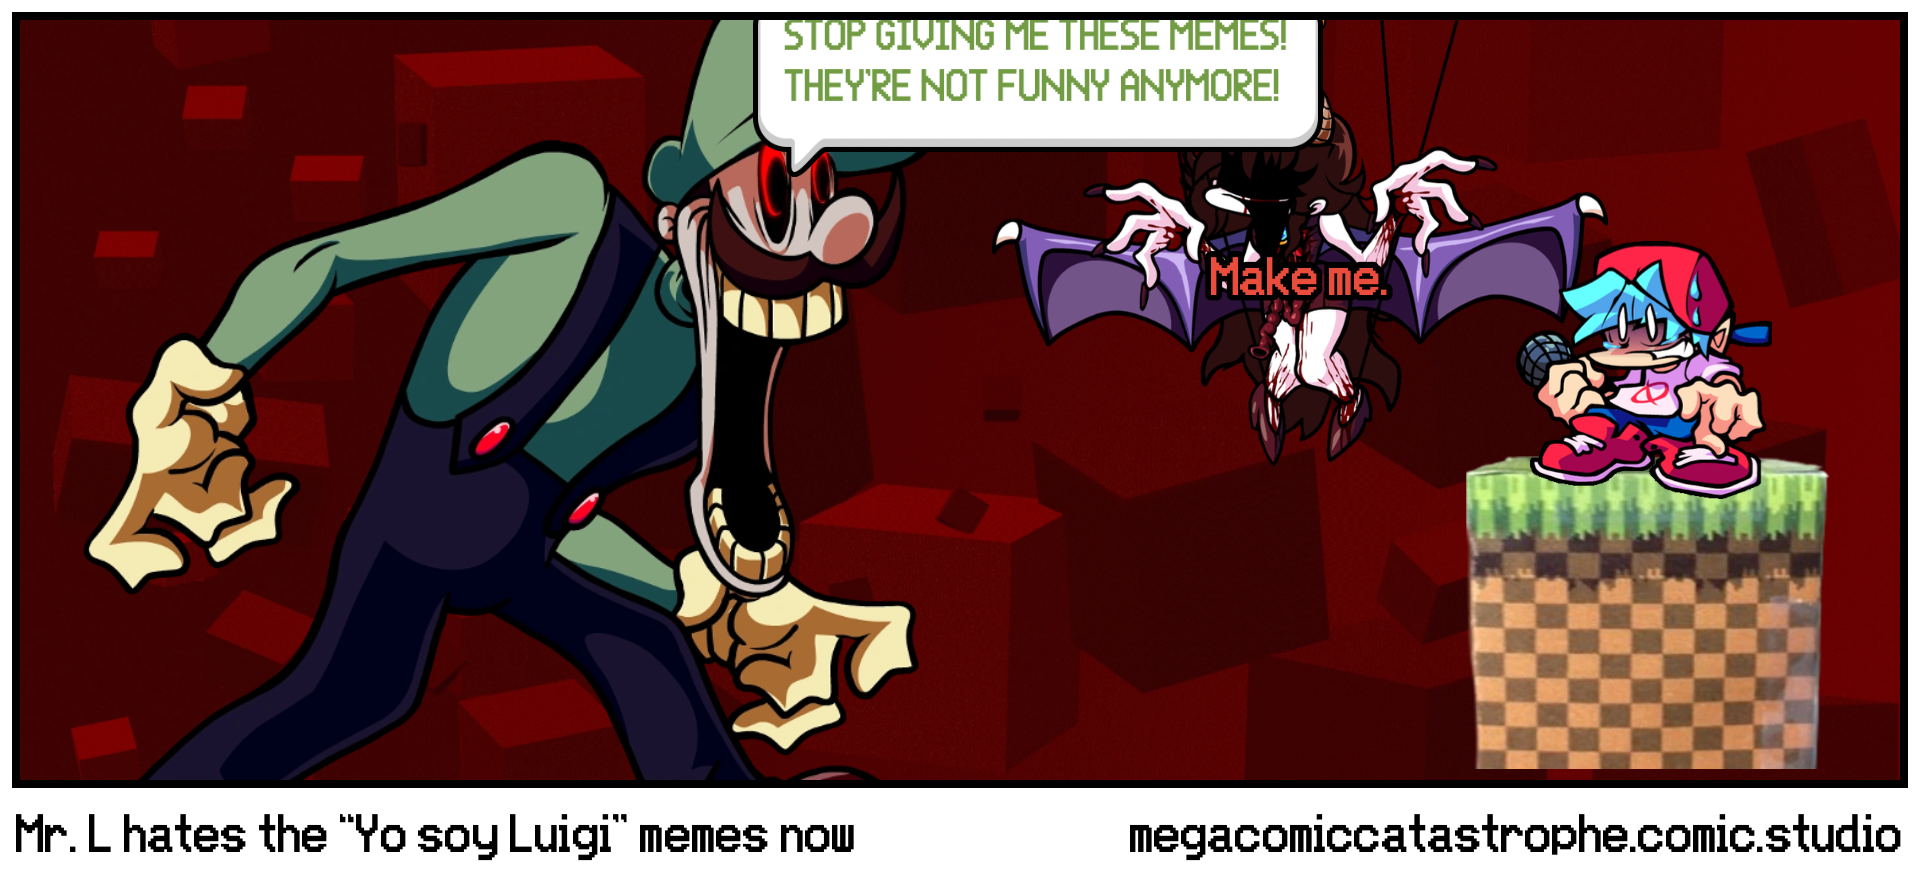 Mr. L hates the “Yo soy Luigi” memes now